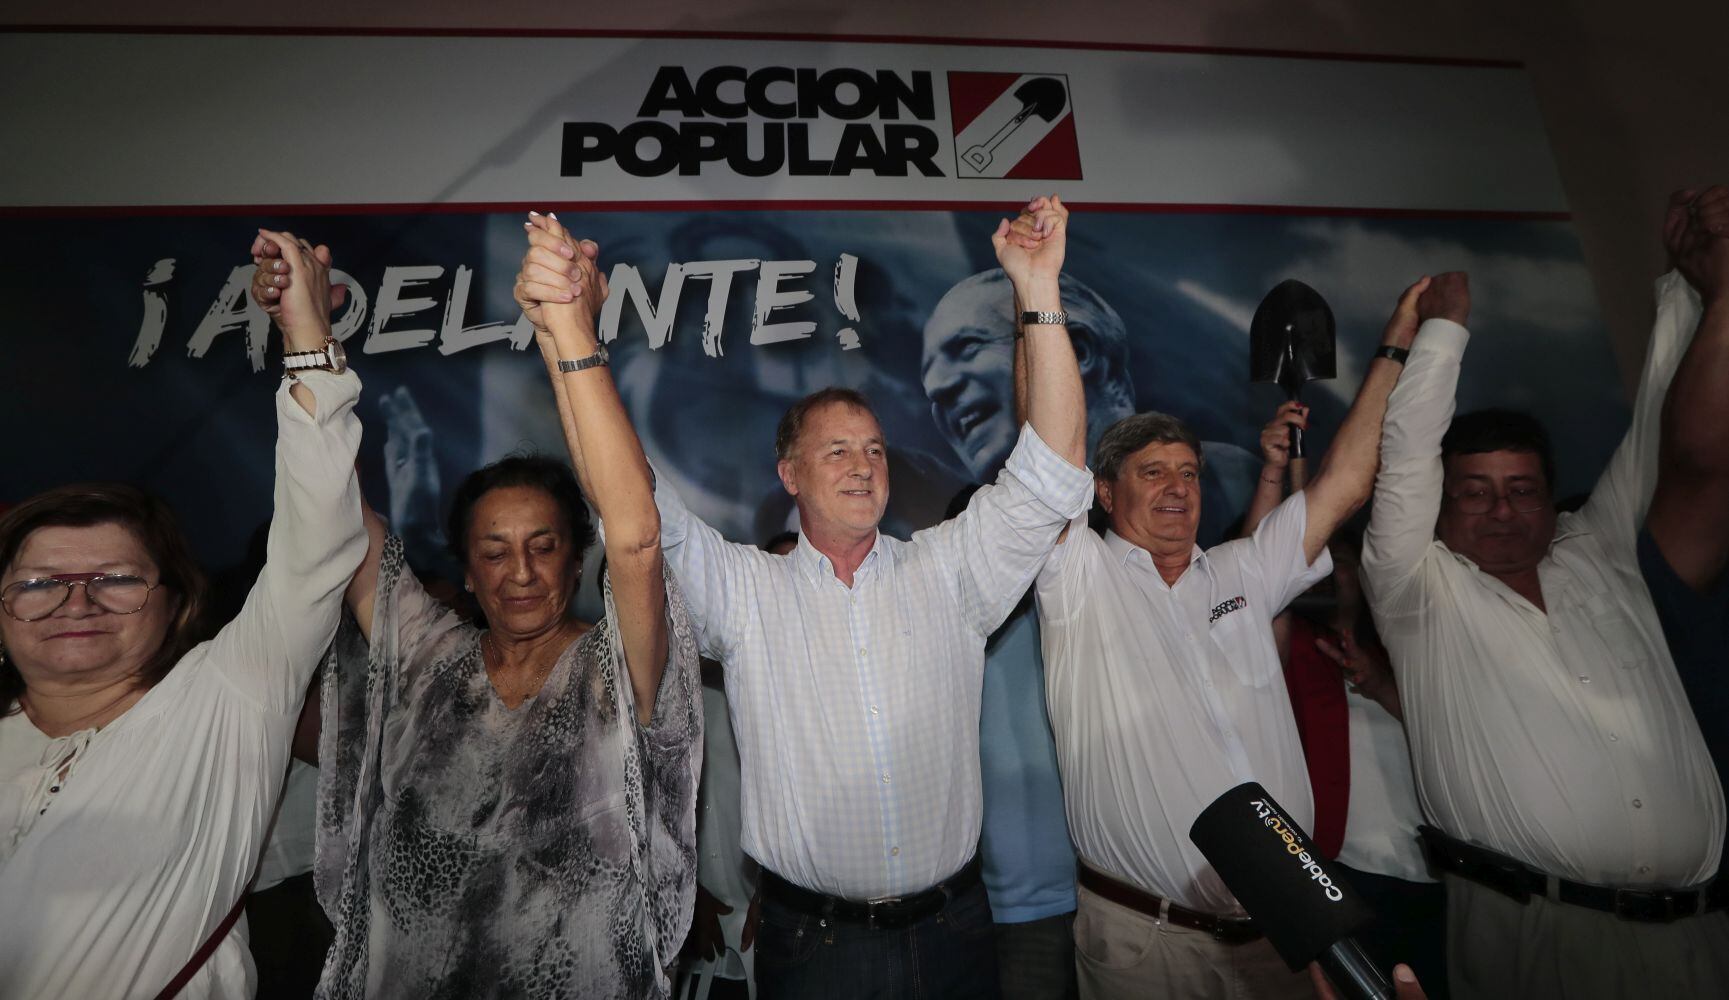 Reacción al flash electoral en Acción Popular, en las elecciones congresales extraordinarias del 2020. Asistieron Raúl Diez Canseco , Jorge Muñoz  y candidatos al Congreso.